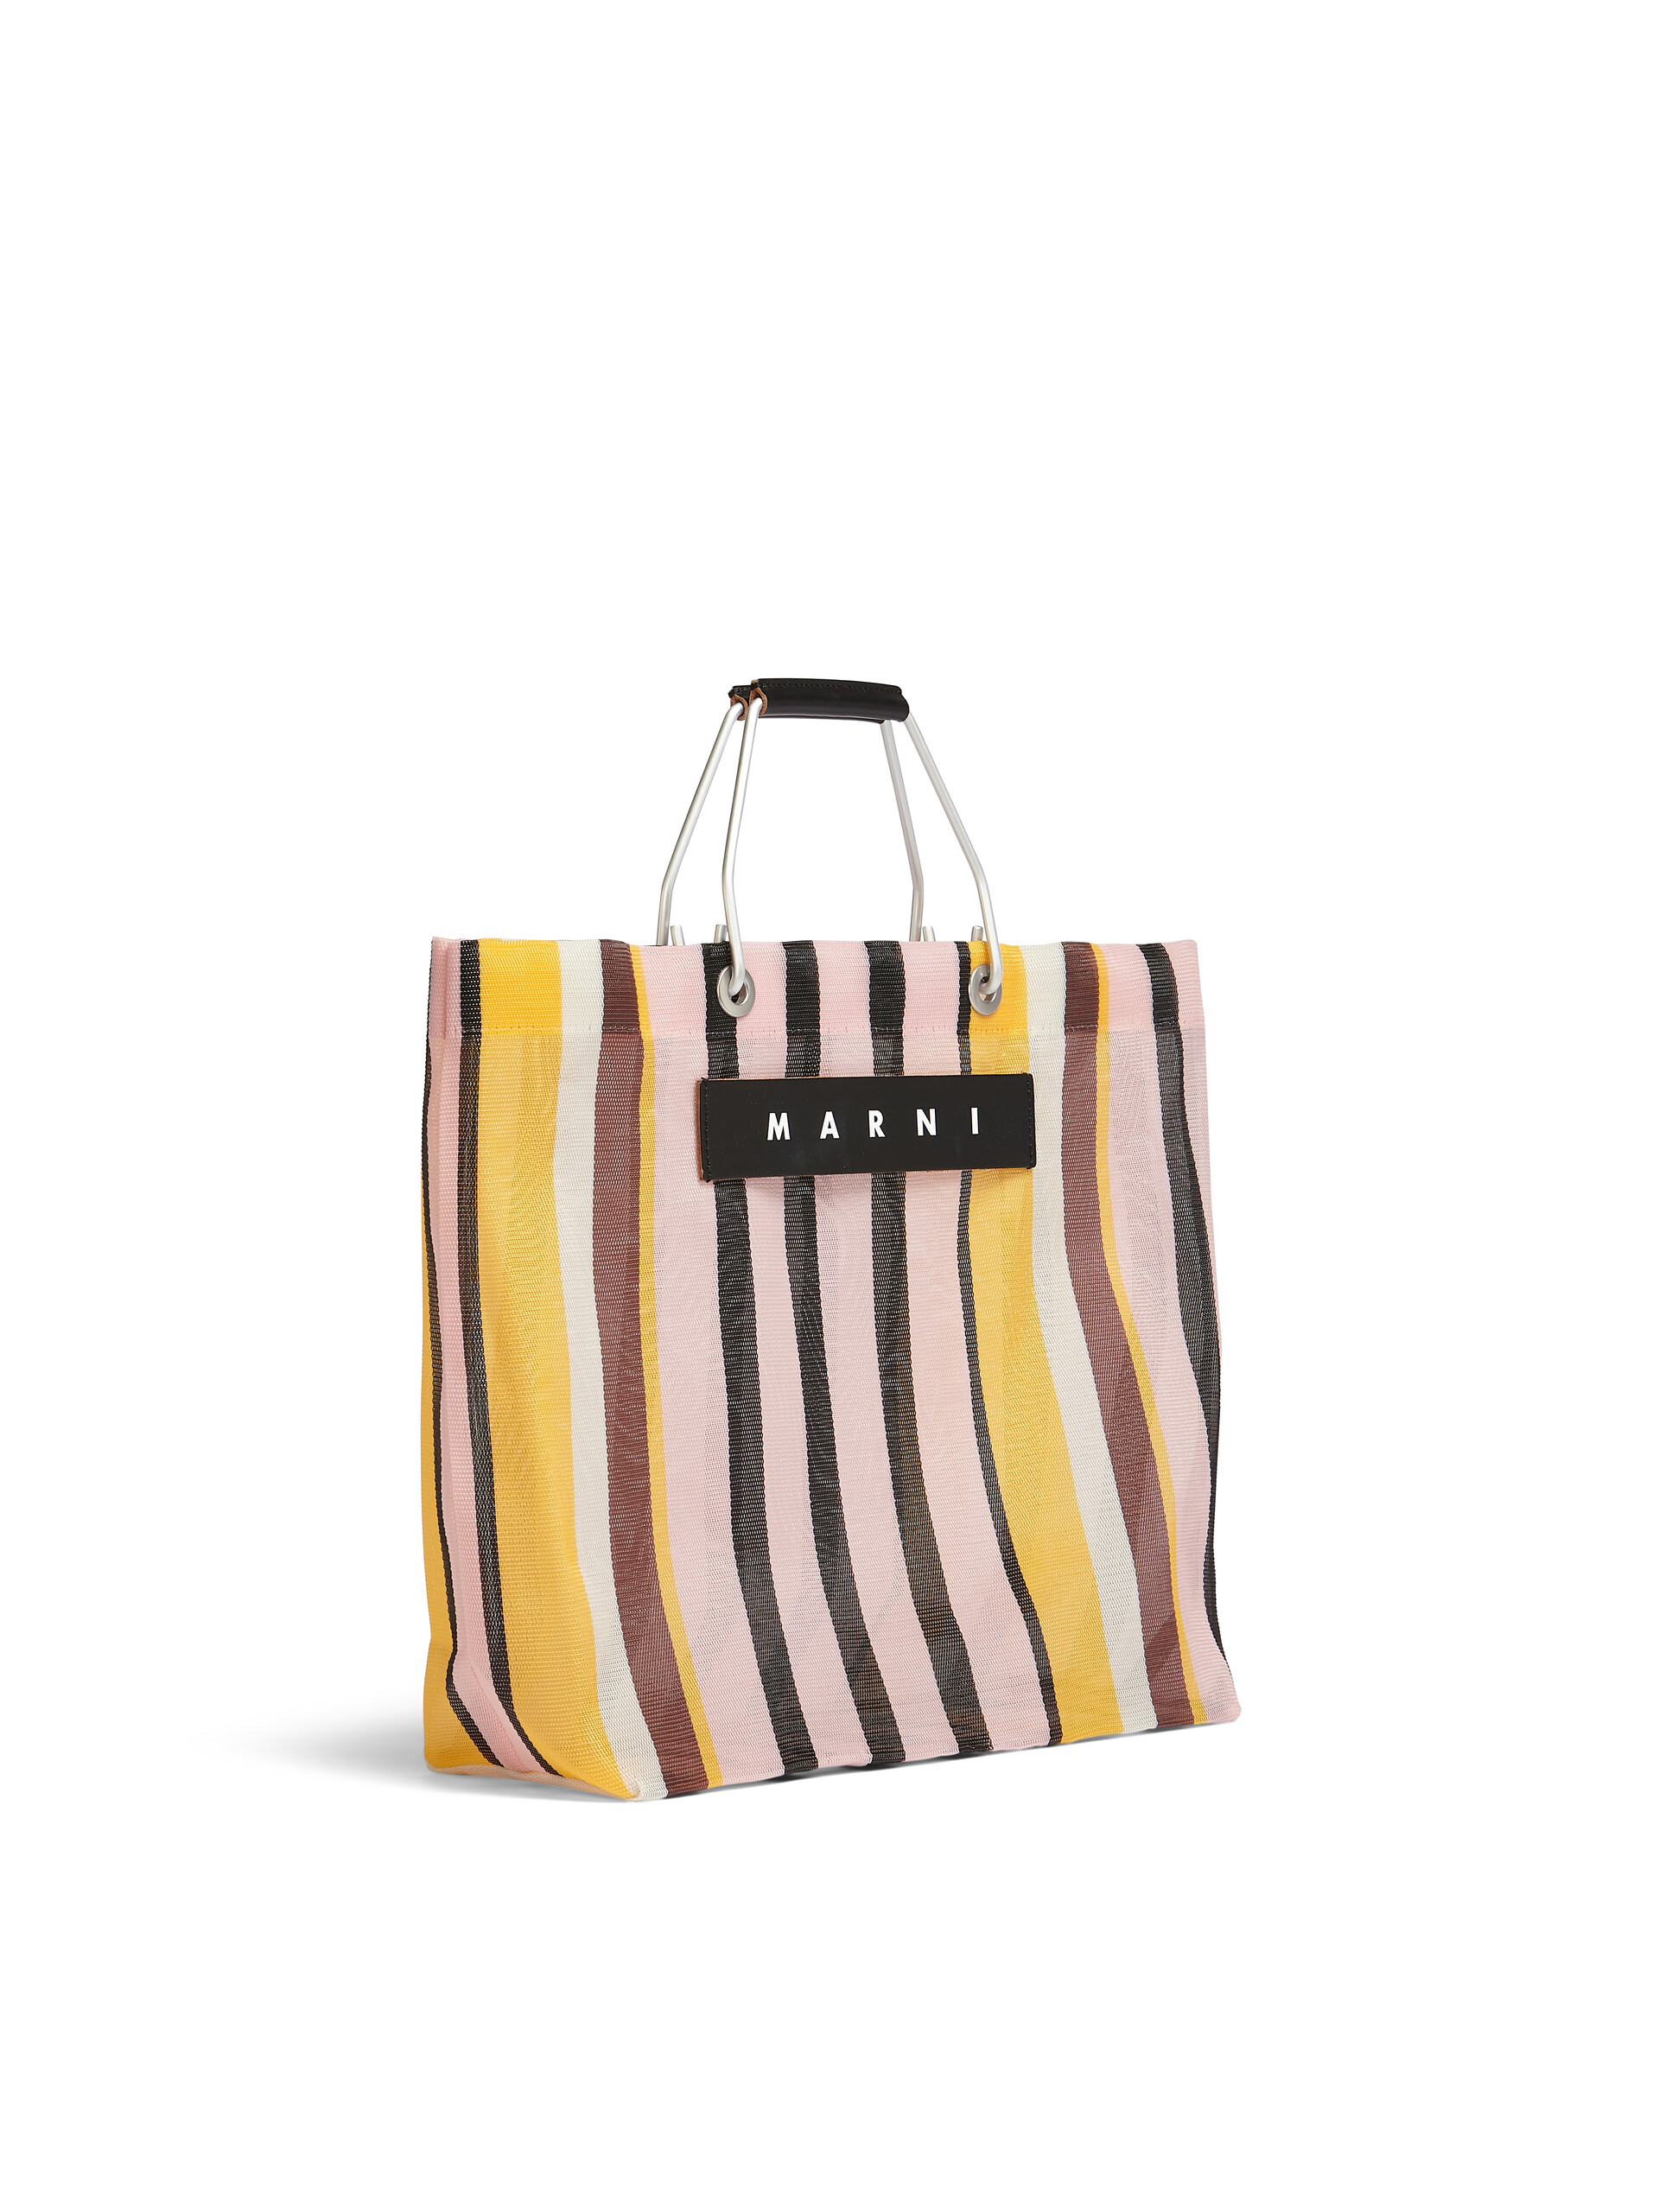 MARNI MARKET STRIPE multicolor pink bag | Marni